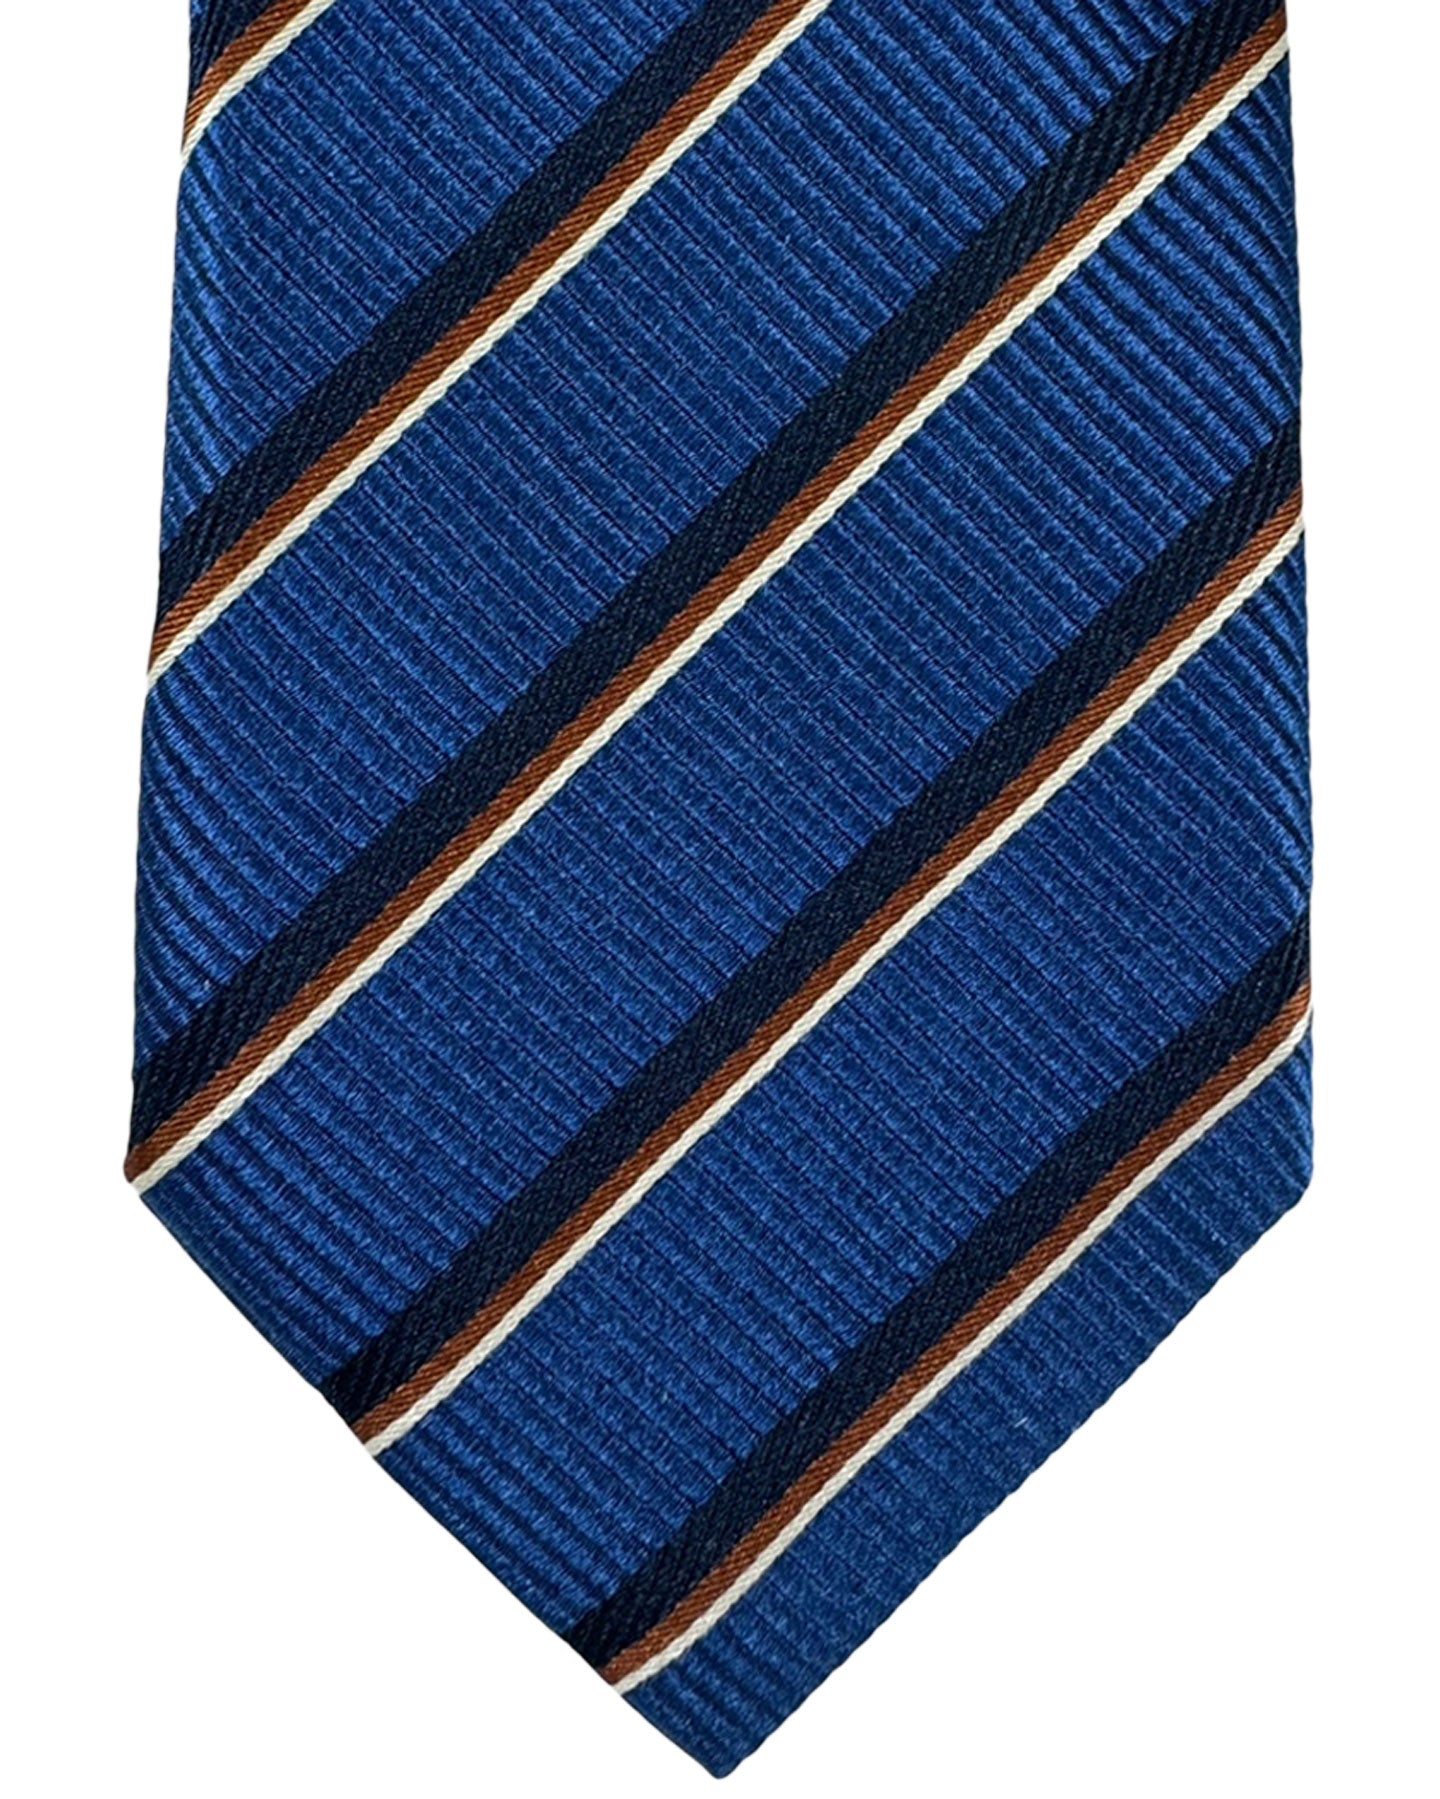 Canali Silk Tie Navy Brown Stripes Pattern